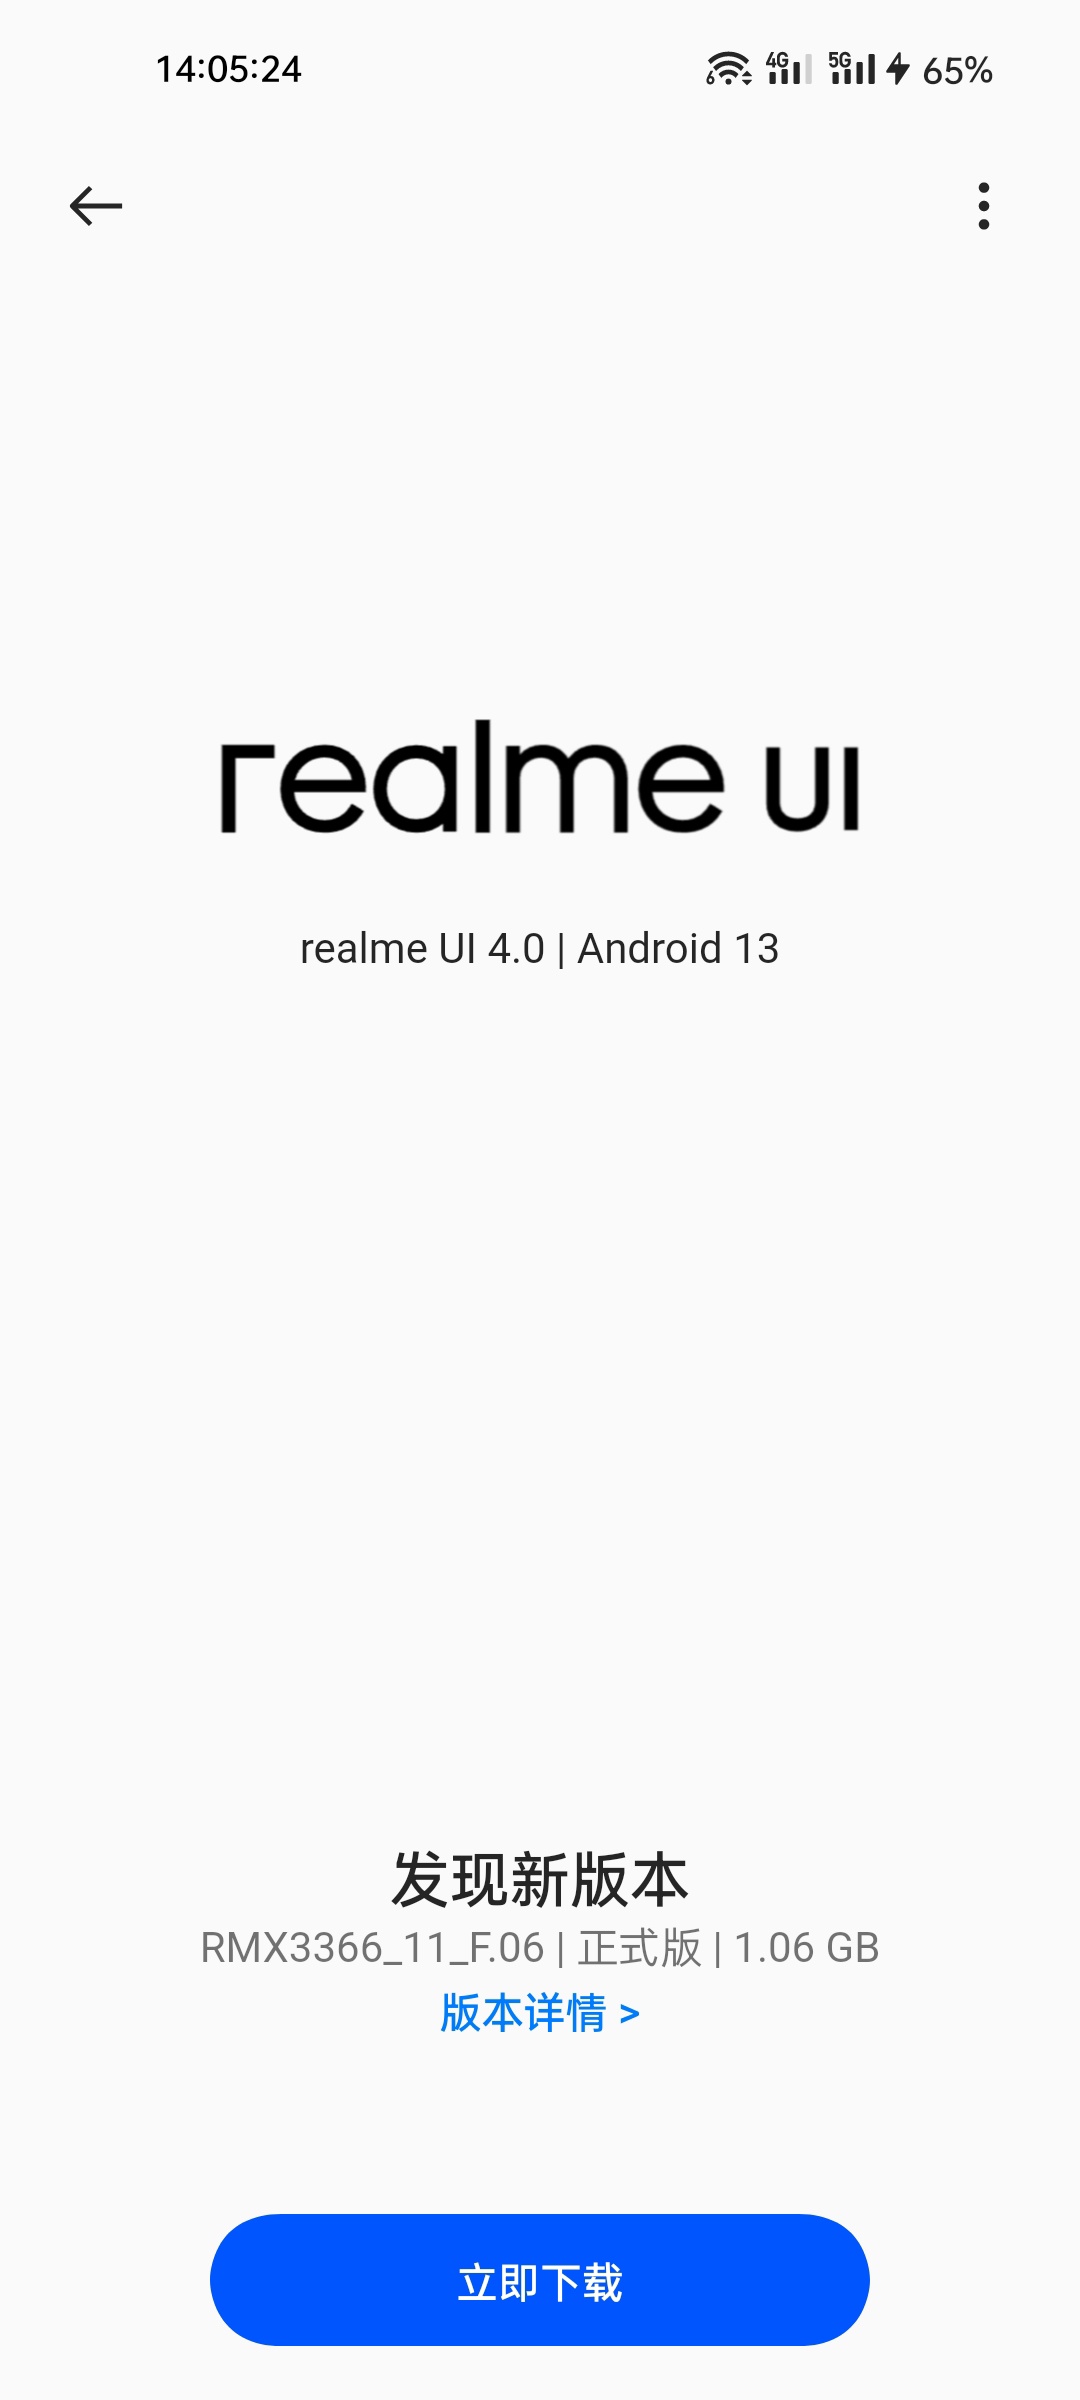 真我GT大师探索版推送realme UI 4.0正式版 重点新增了水生设计